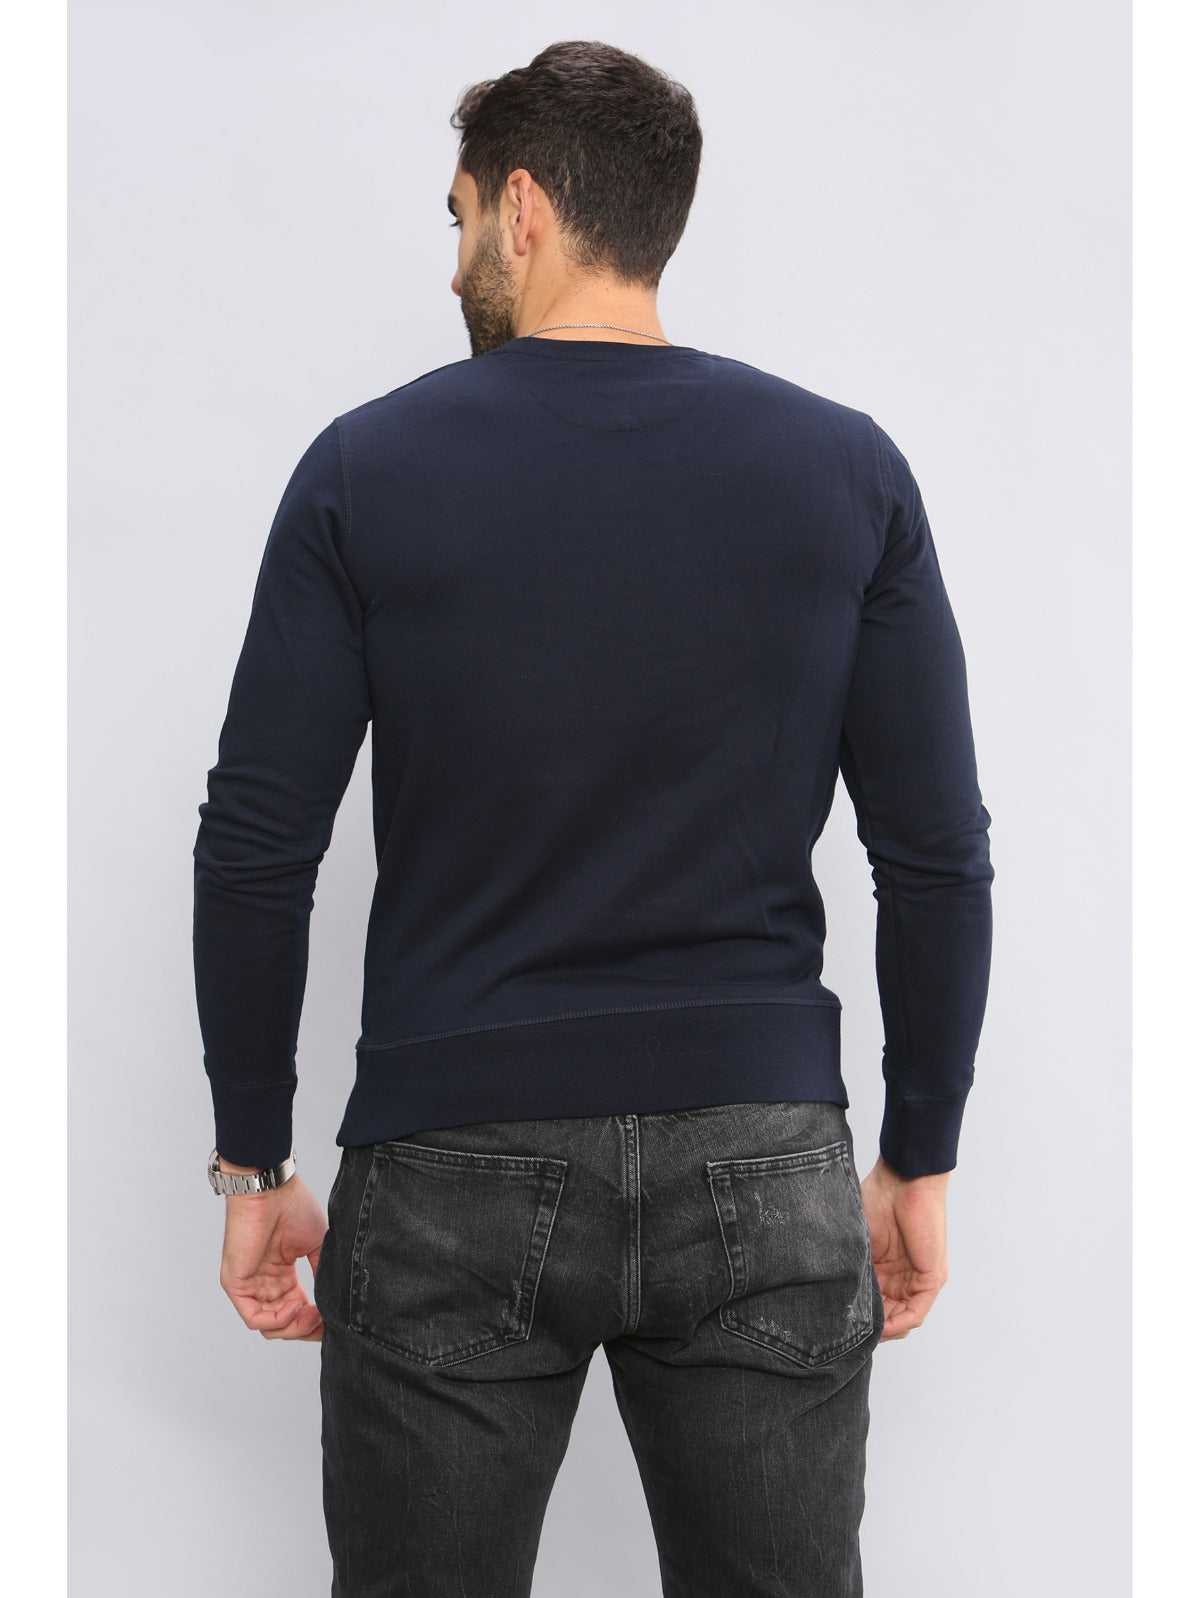 Gant_Outline Gant Mens Long Sleeved Outlined Branded Sweatshirt GANT RAWDENIM